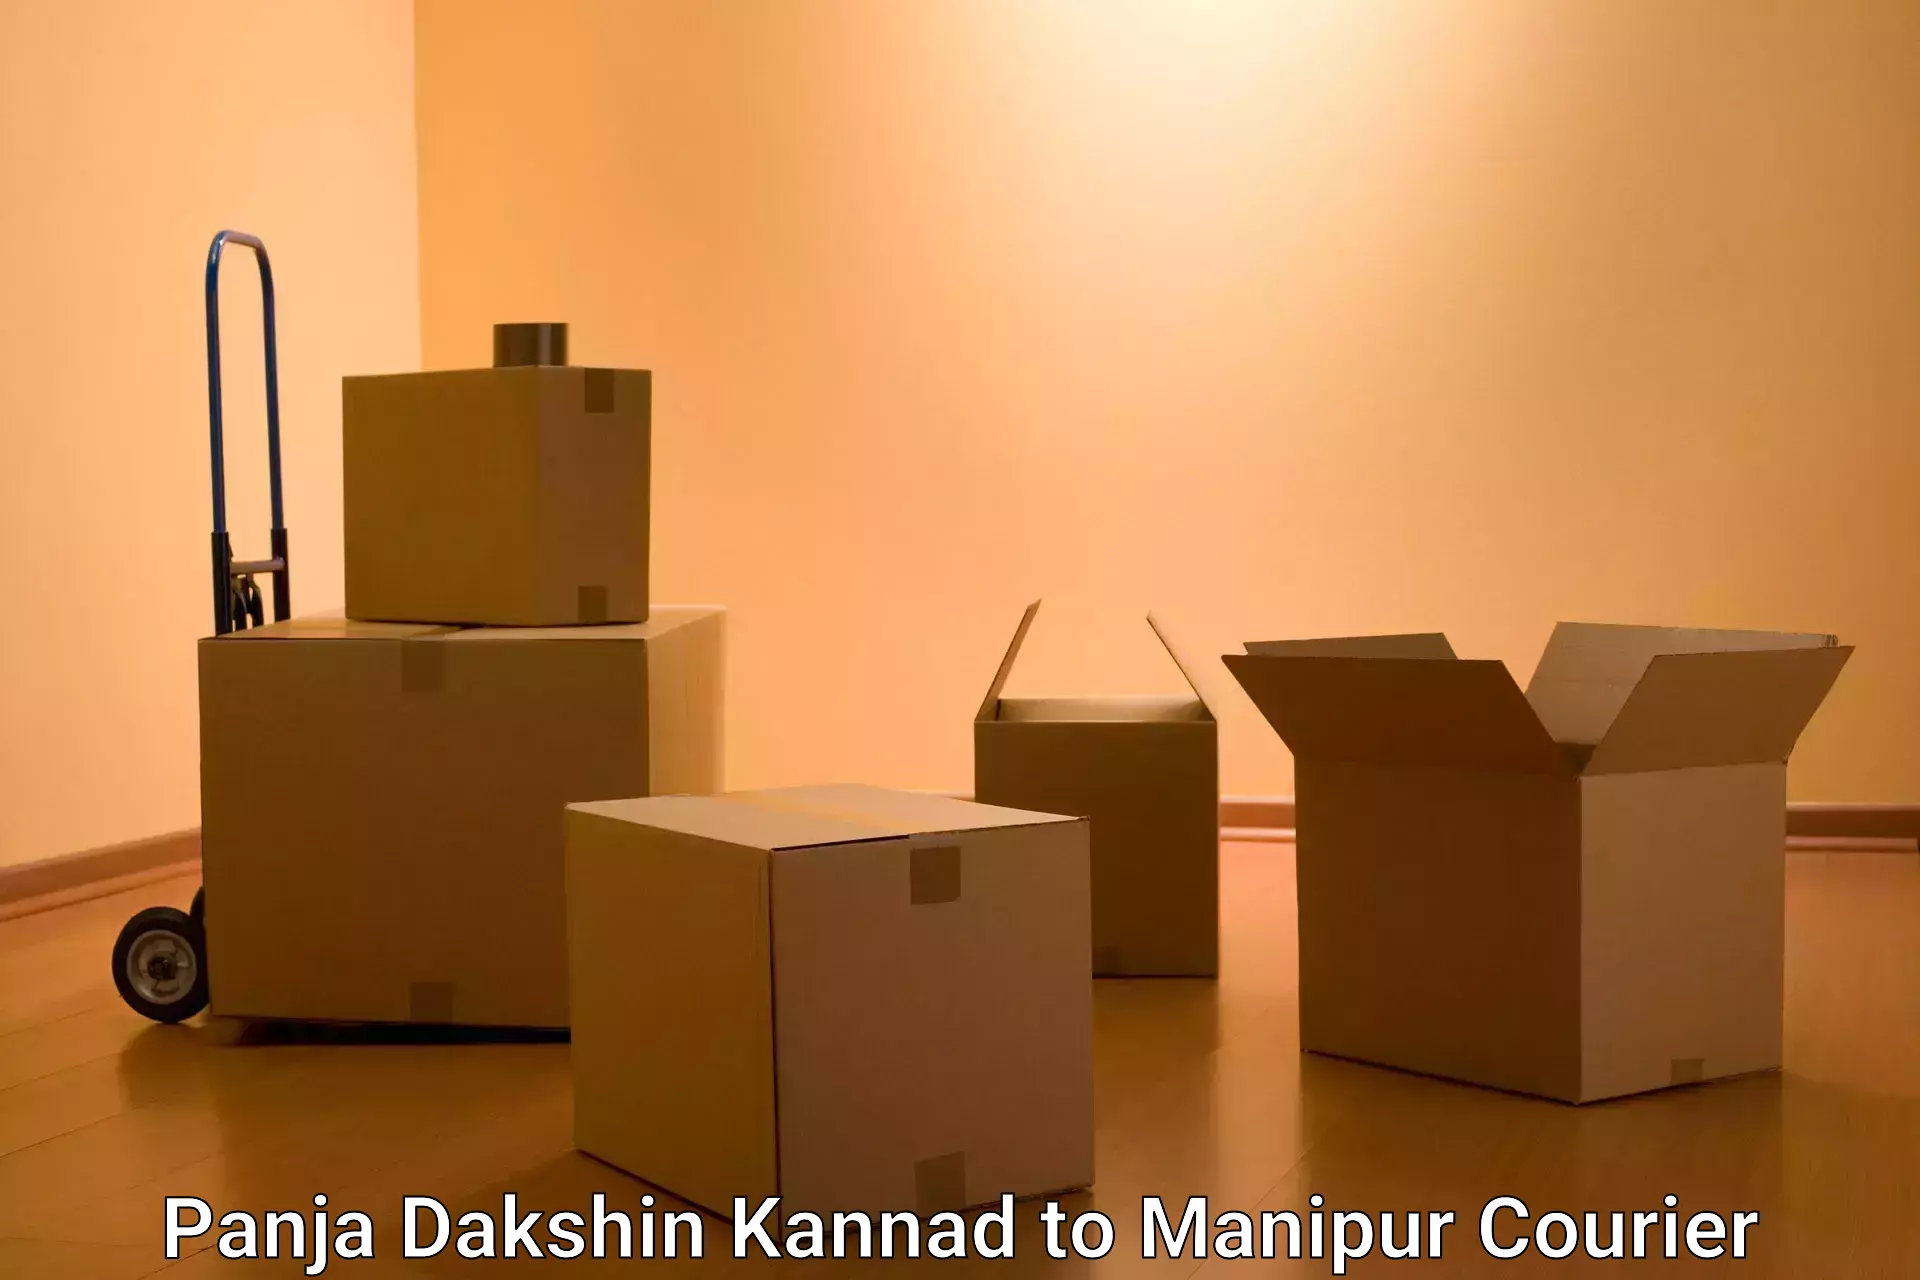 24/7 courier service Panja Dakshin Kannad to NIT Manipur